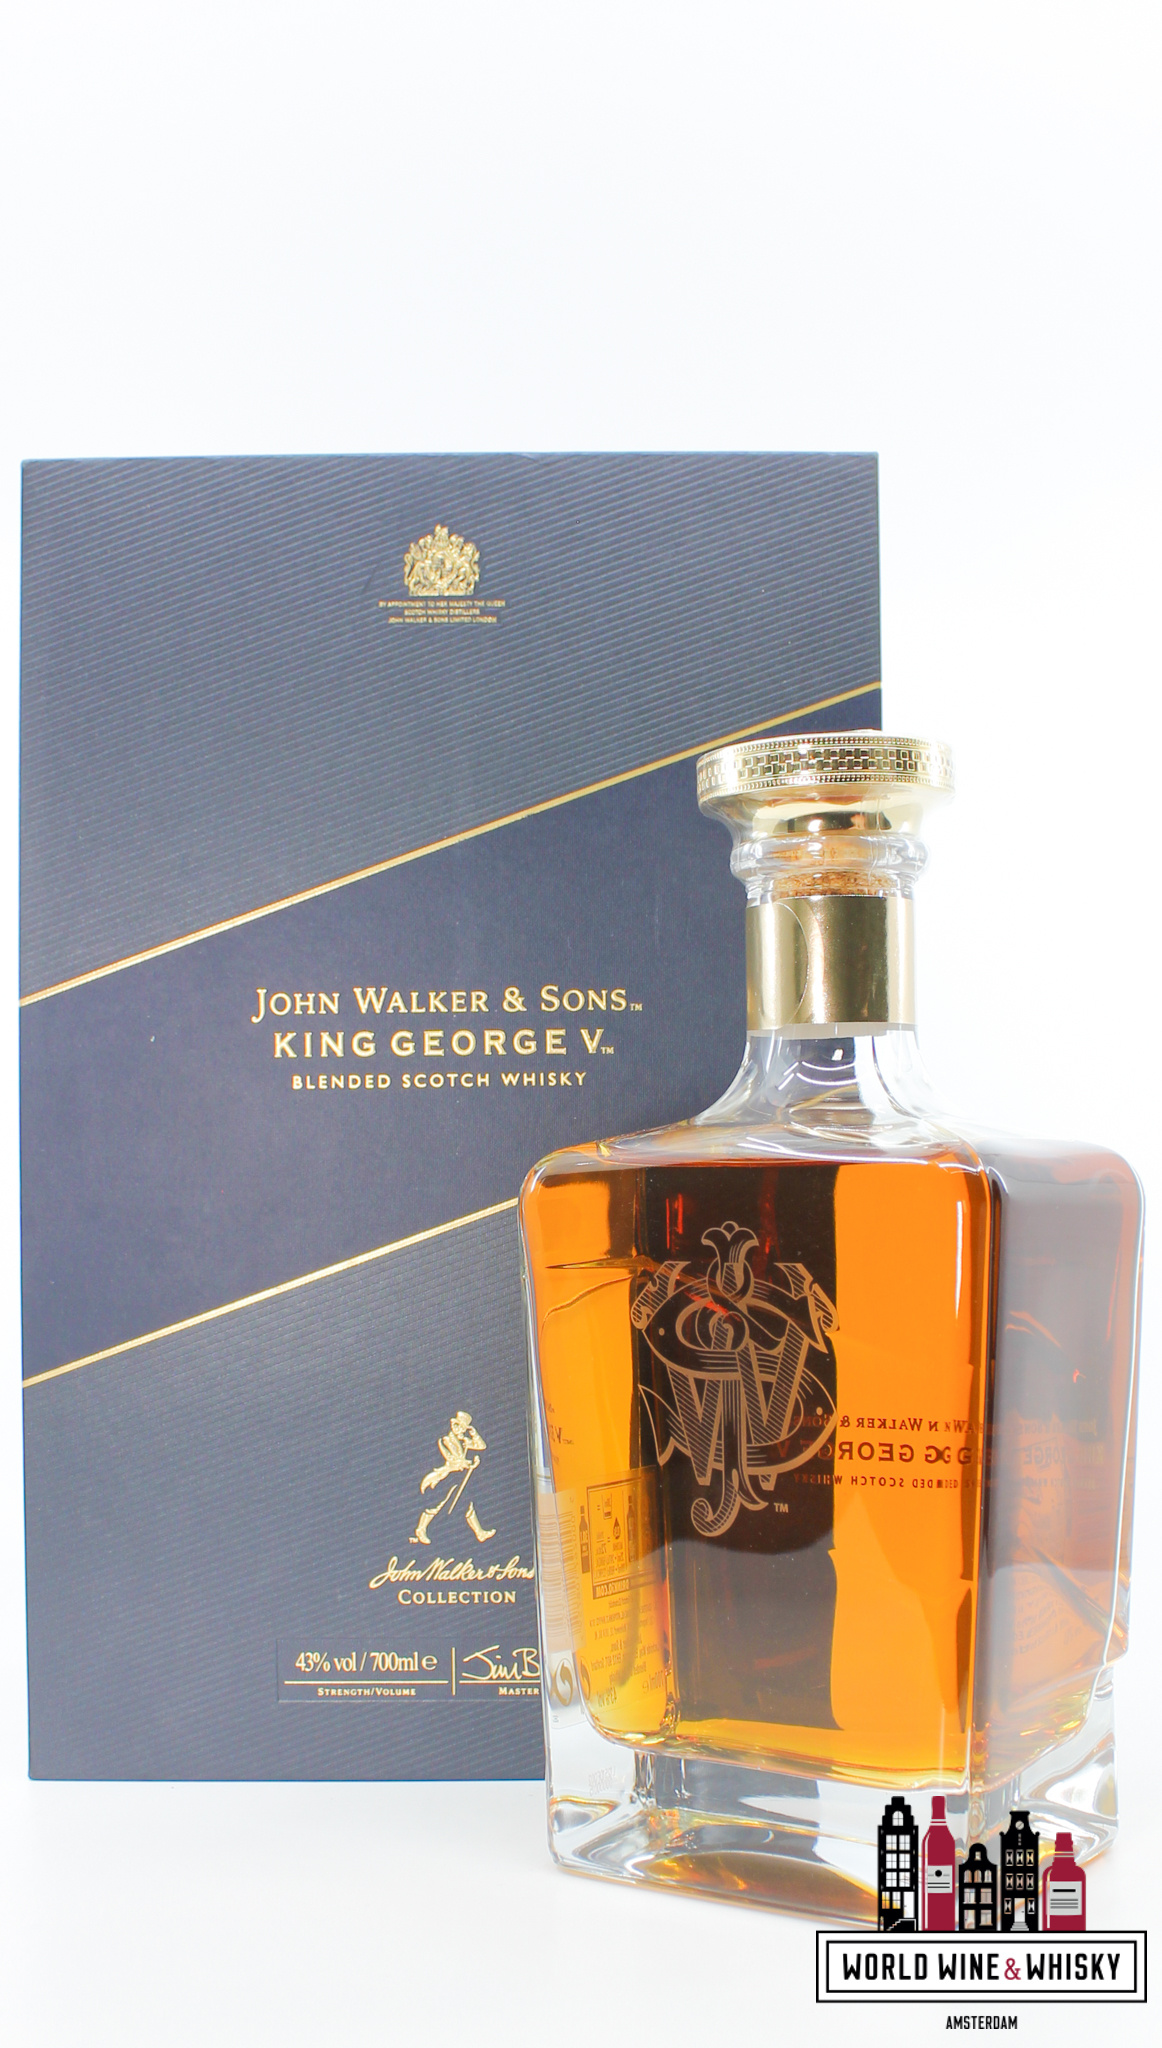 John Walker & Sons John Walker & Sons King George V 43% (in luxury case)